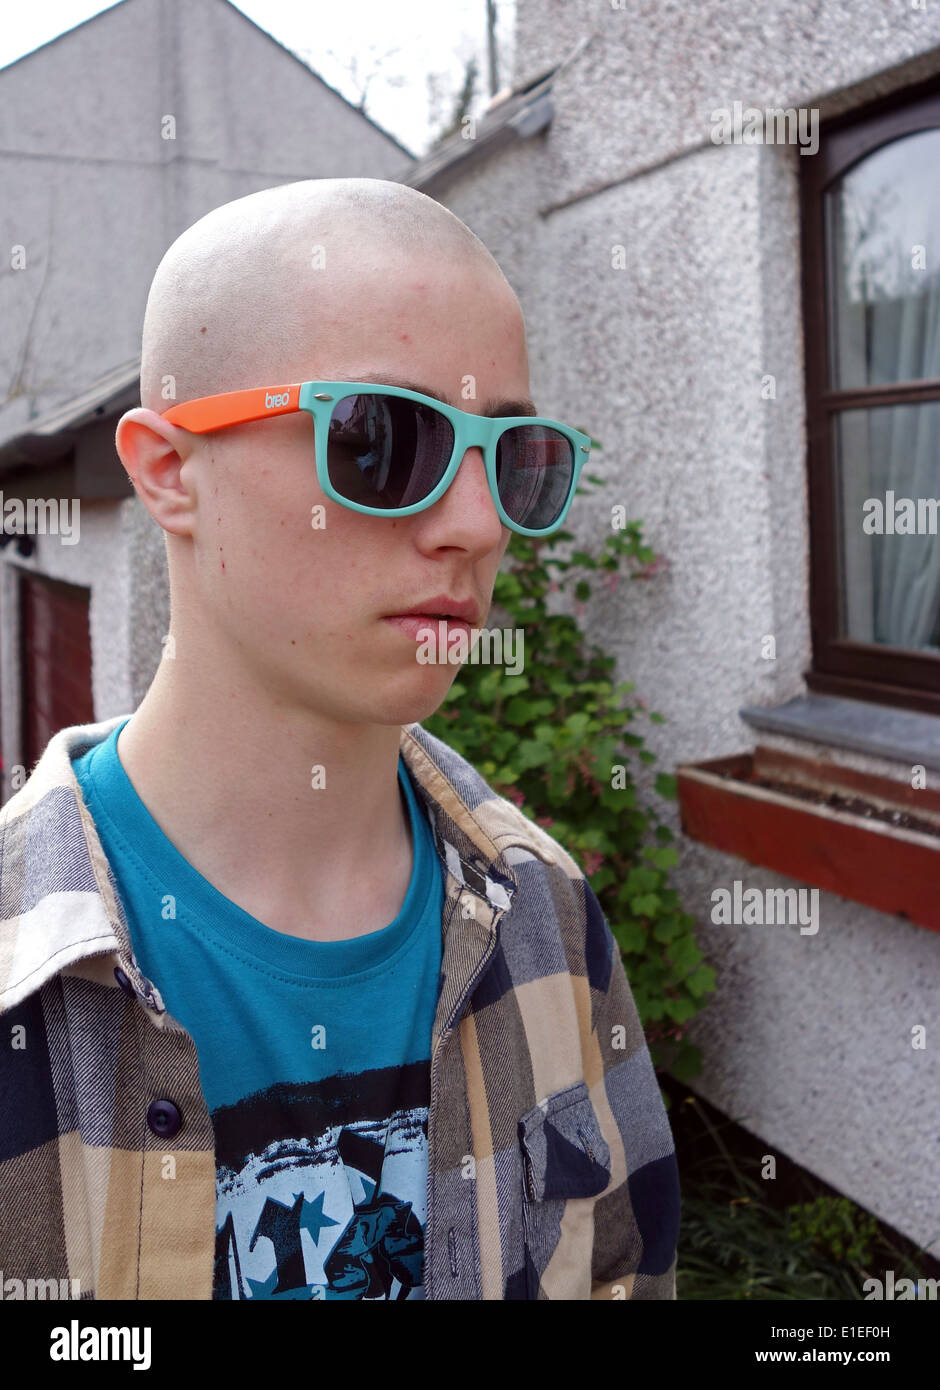 Un jeune garçon avec une coupe de skinhead Banque D'Images